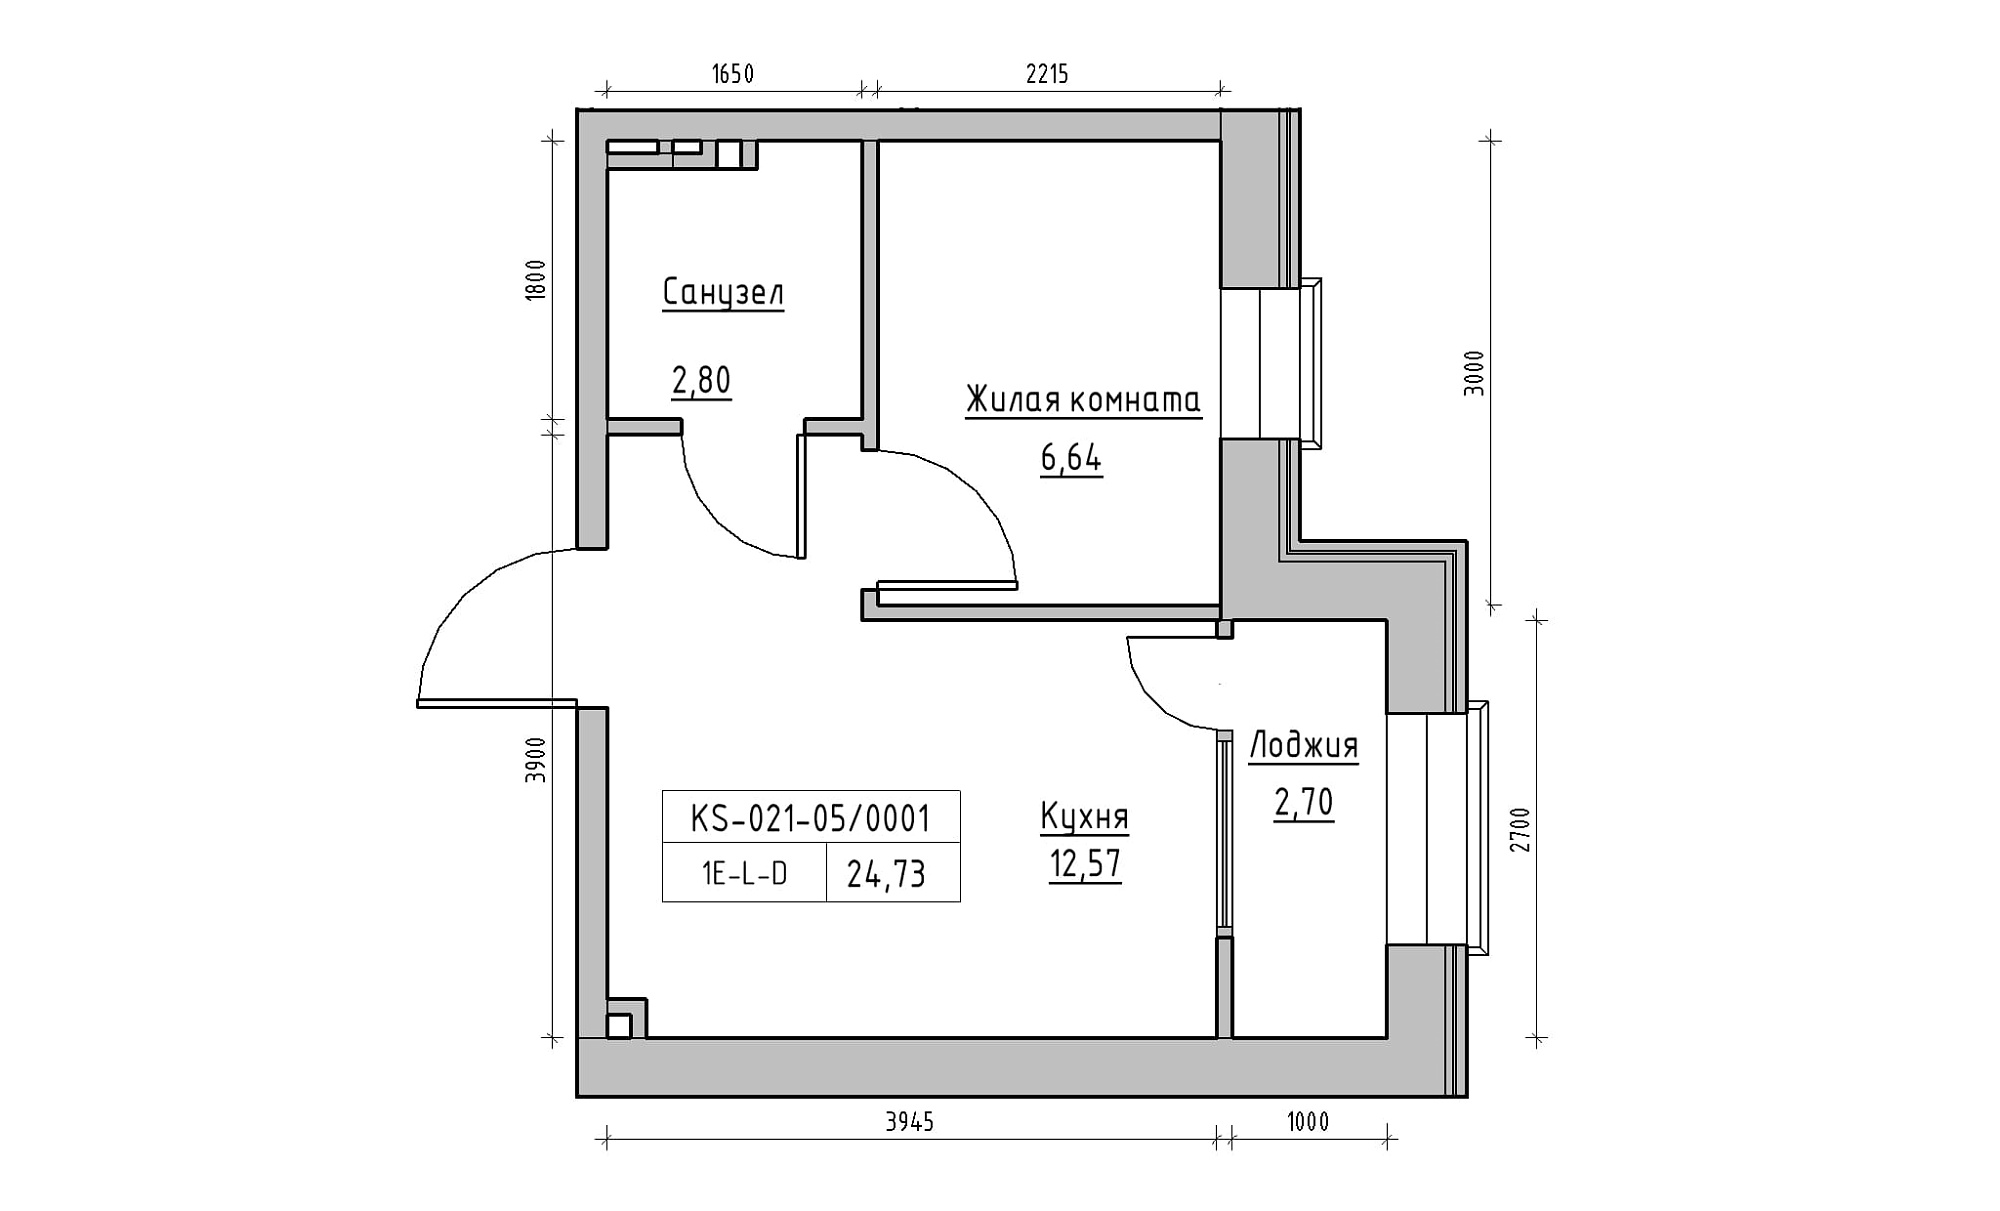 Планування 1-к квартира площею 24.73м2, KS-021-05/0001.